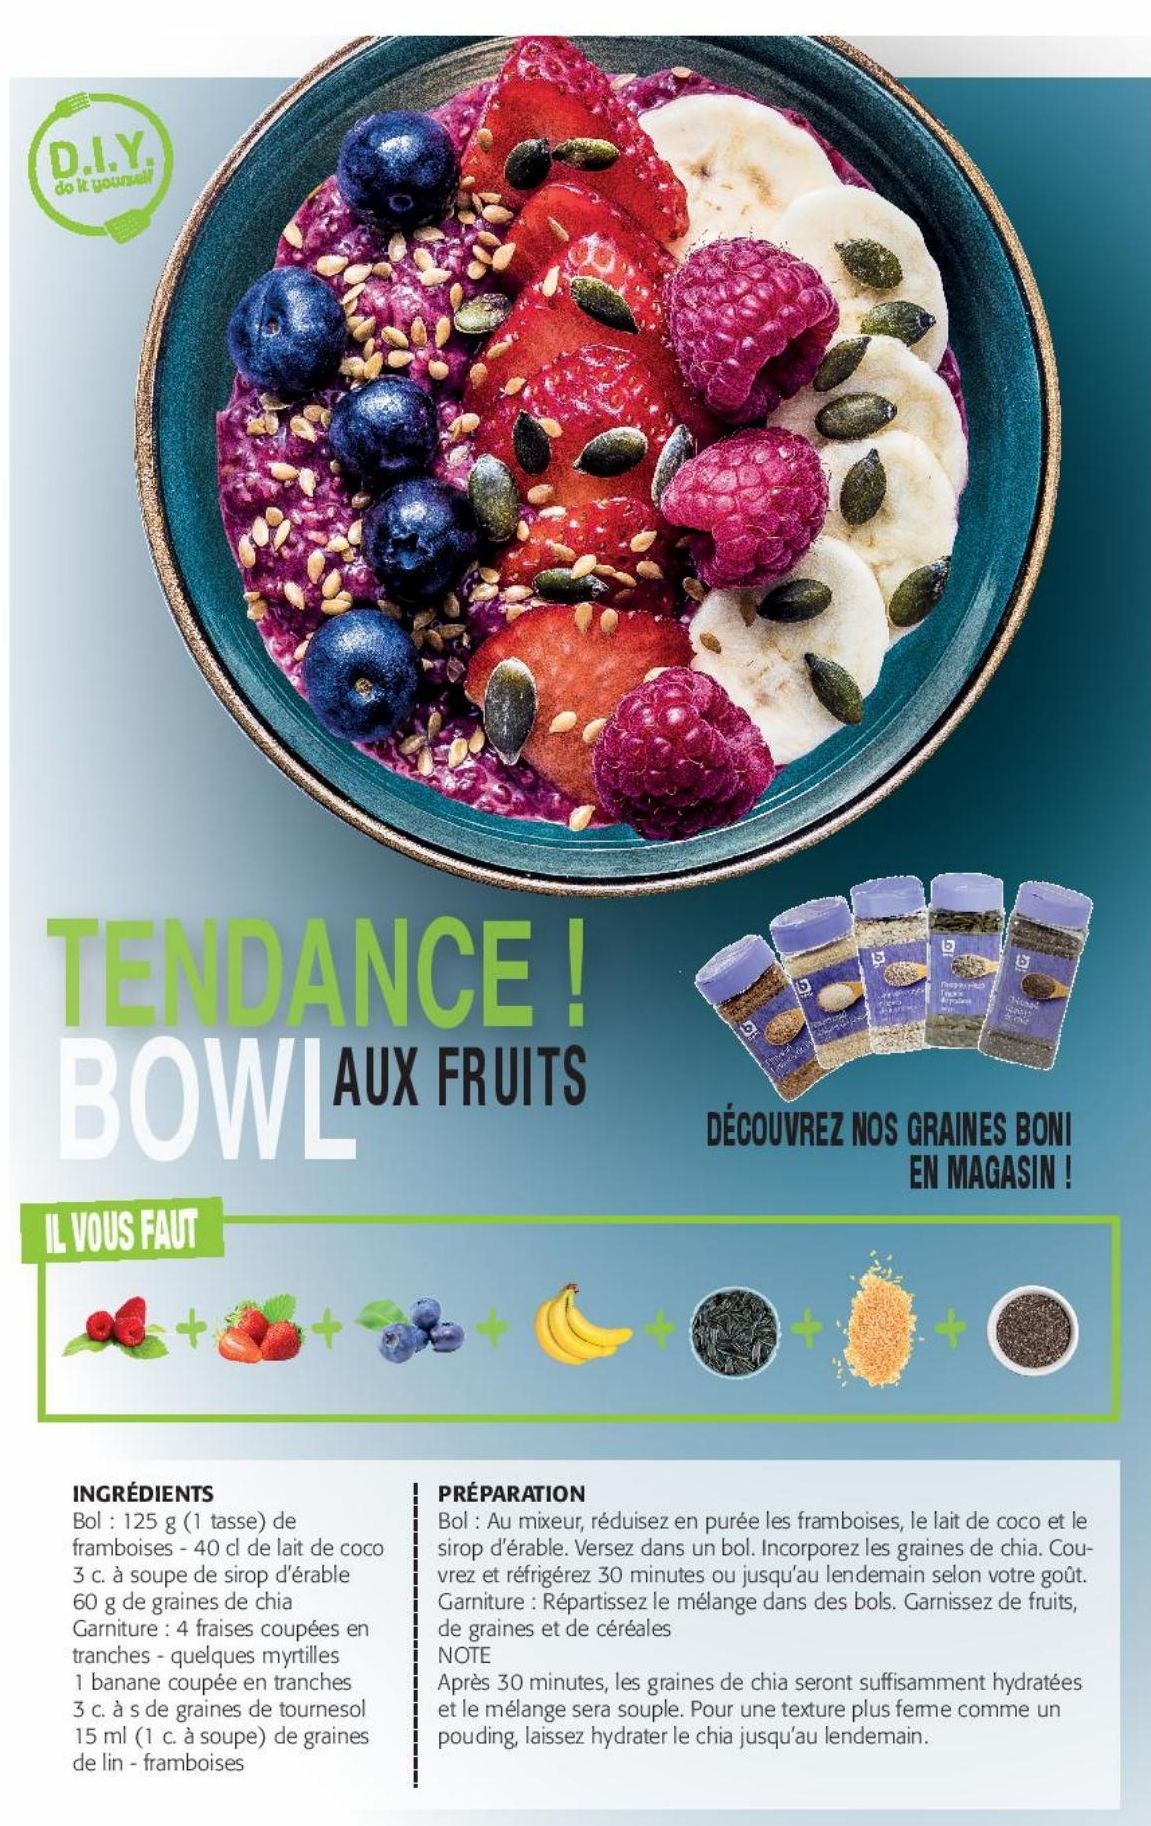 Tendance Bowl aux fruits